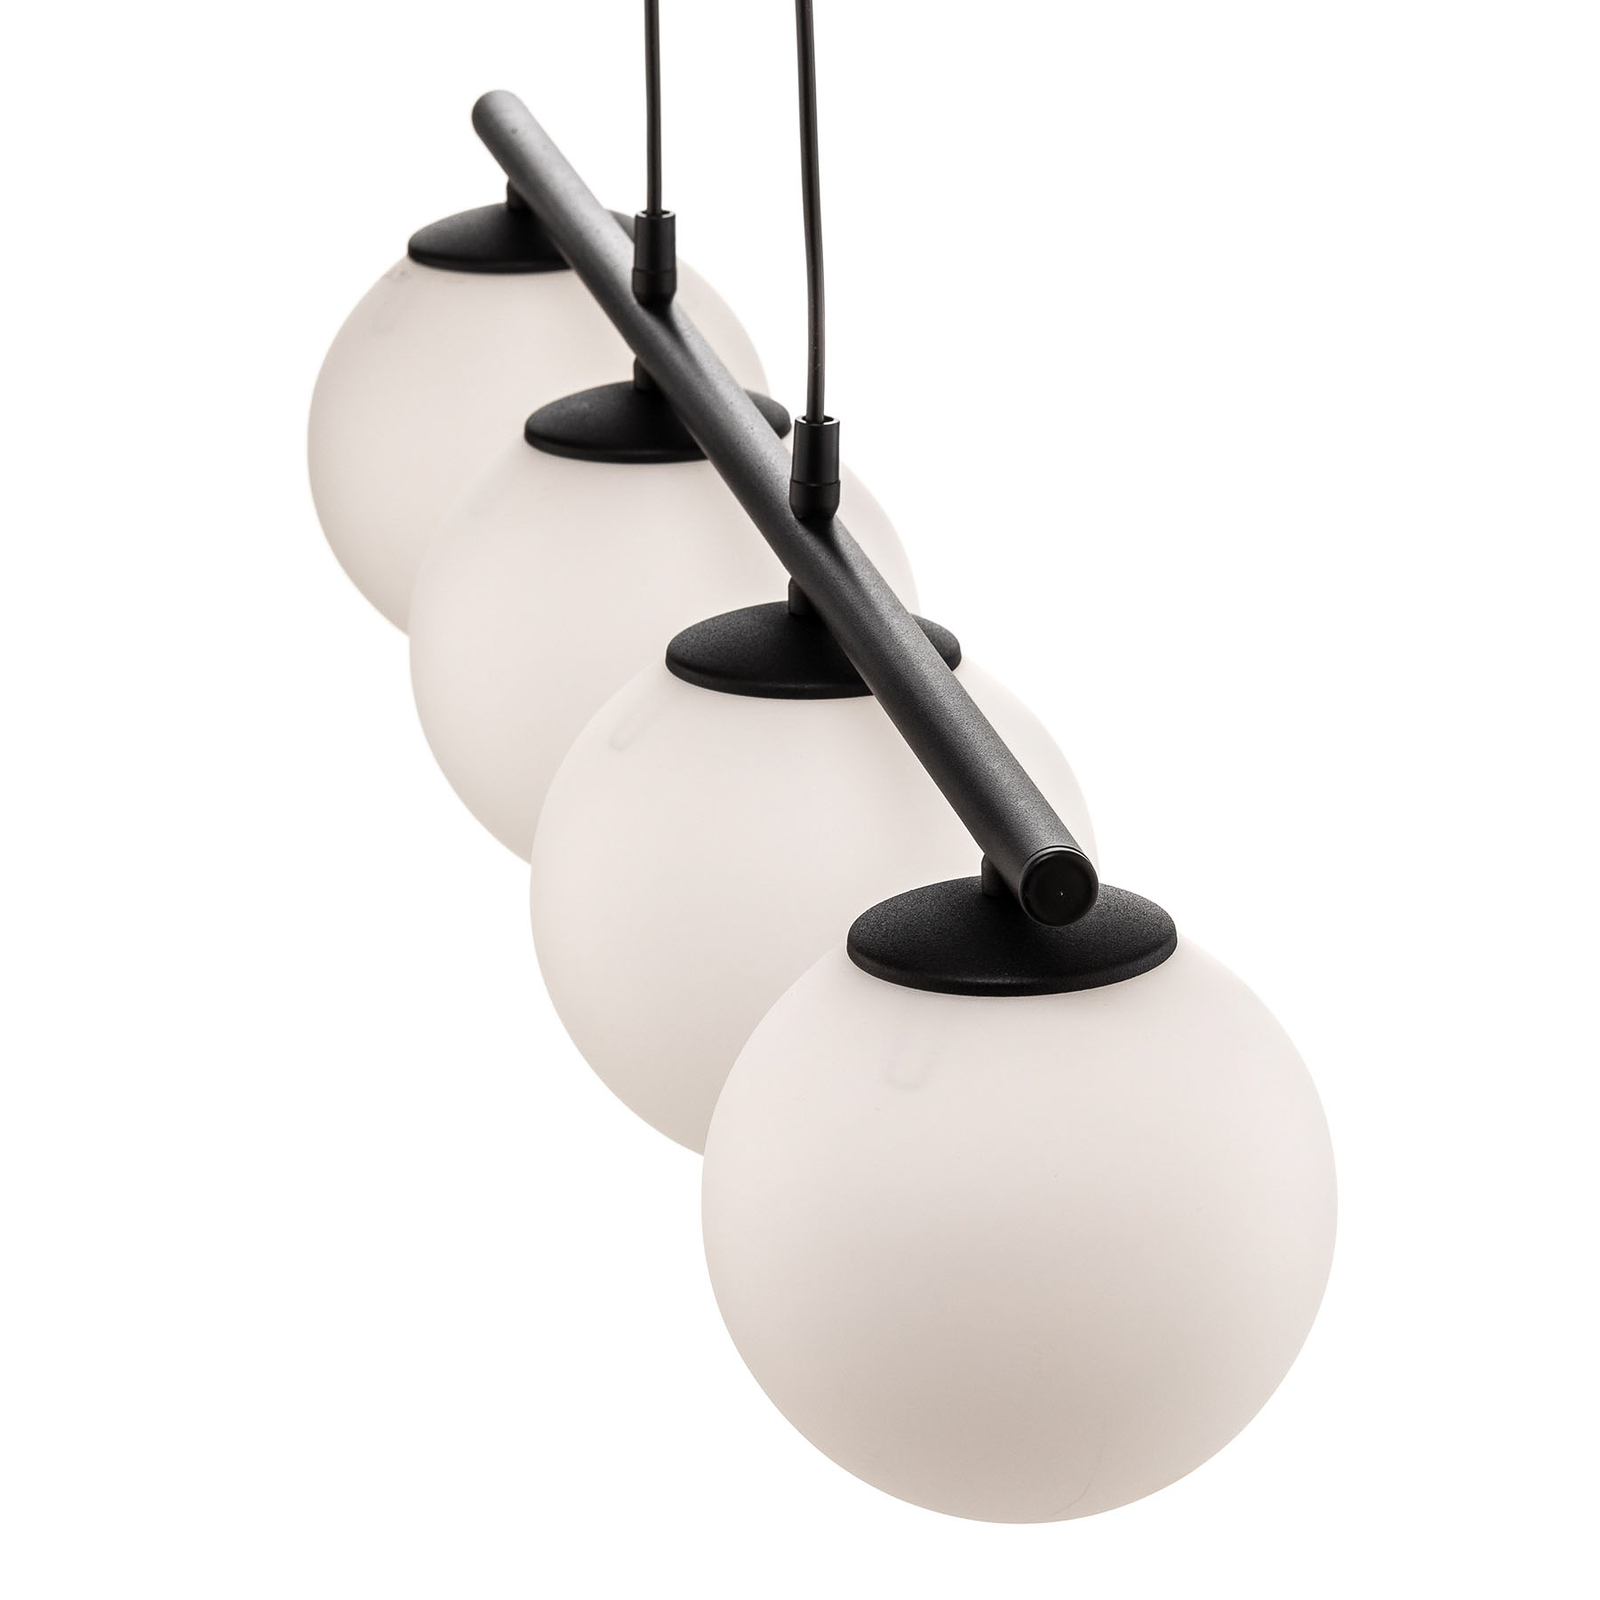 Maxi hanglamp met glazen kappen, 4-lamps